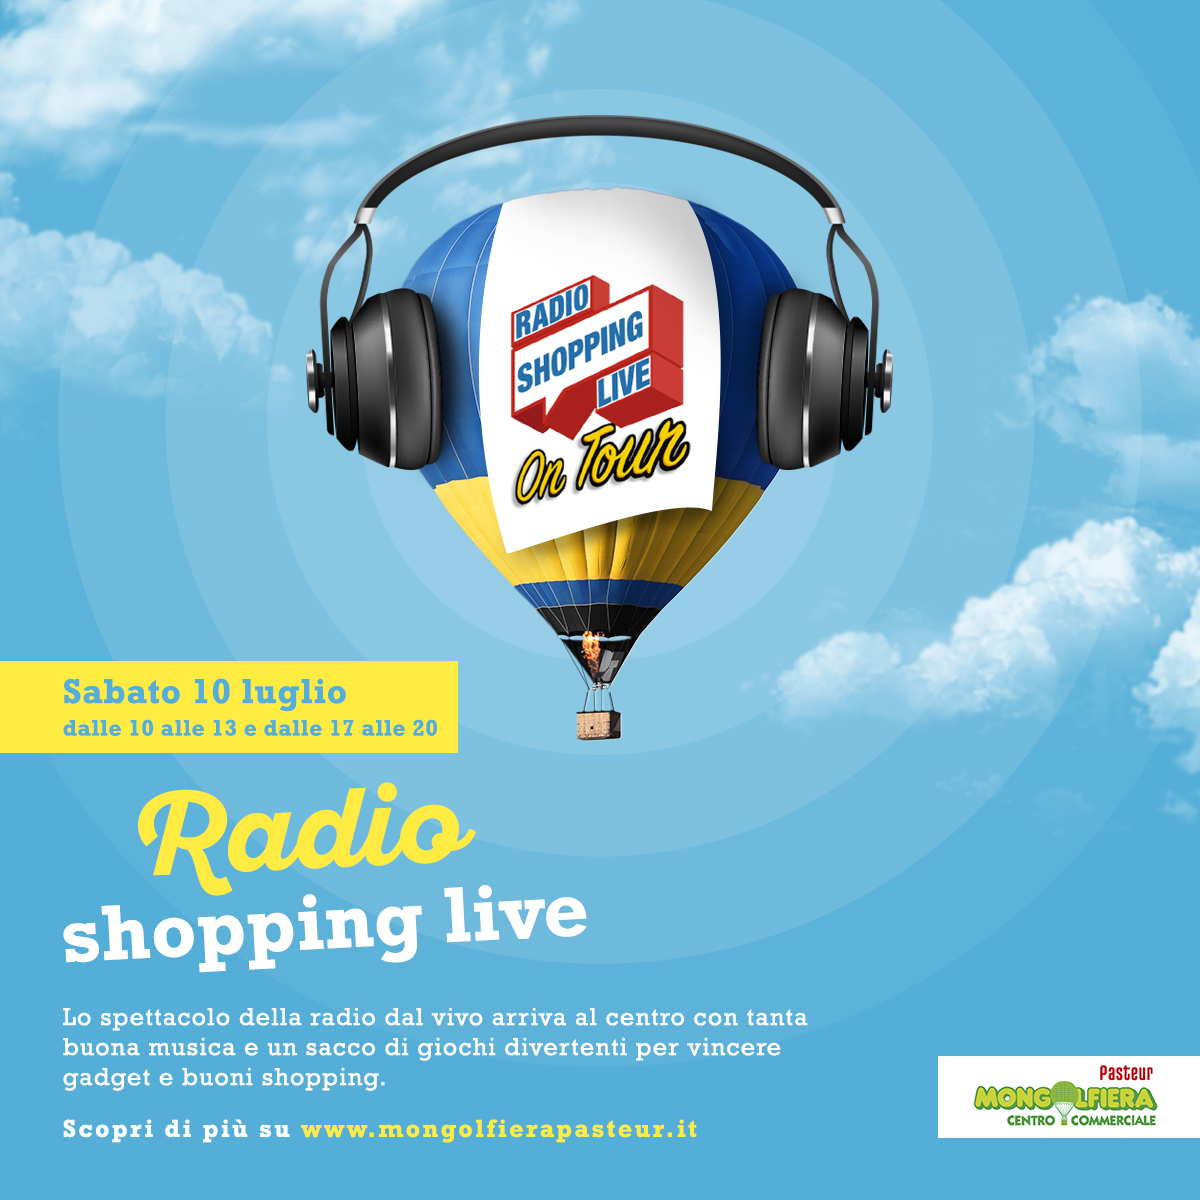 Radio Shopping Live on tour al Mongolfiera Pasteur